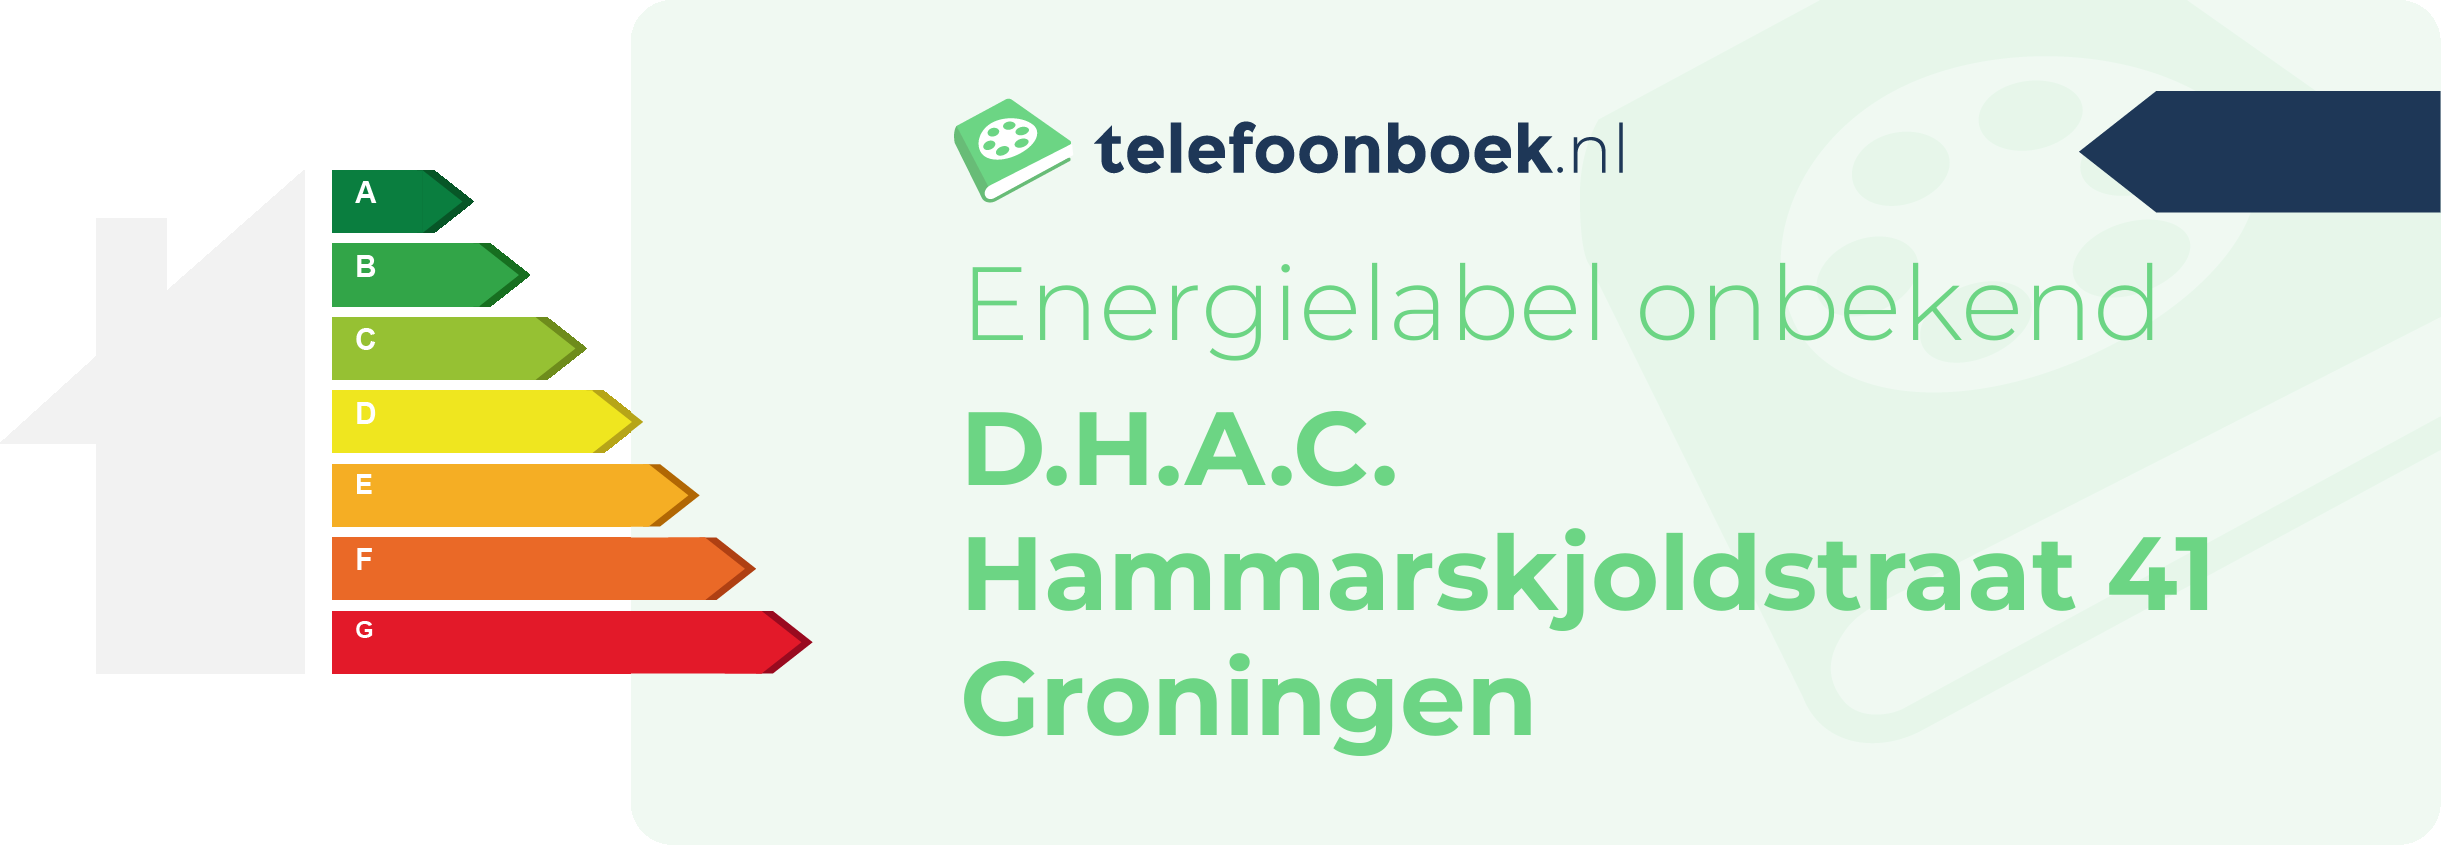 Energielabel D.H.A.C. Hammarskjoldstraat 41 Groningen